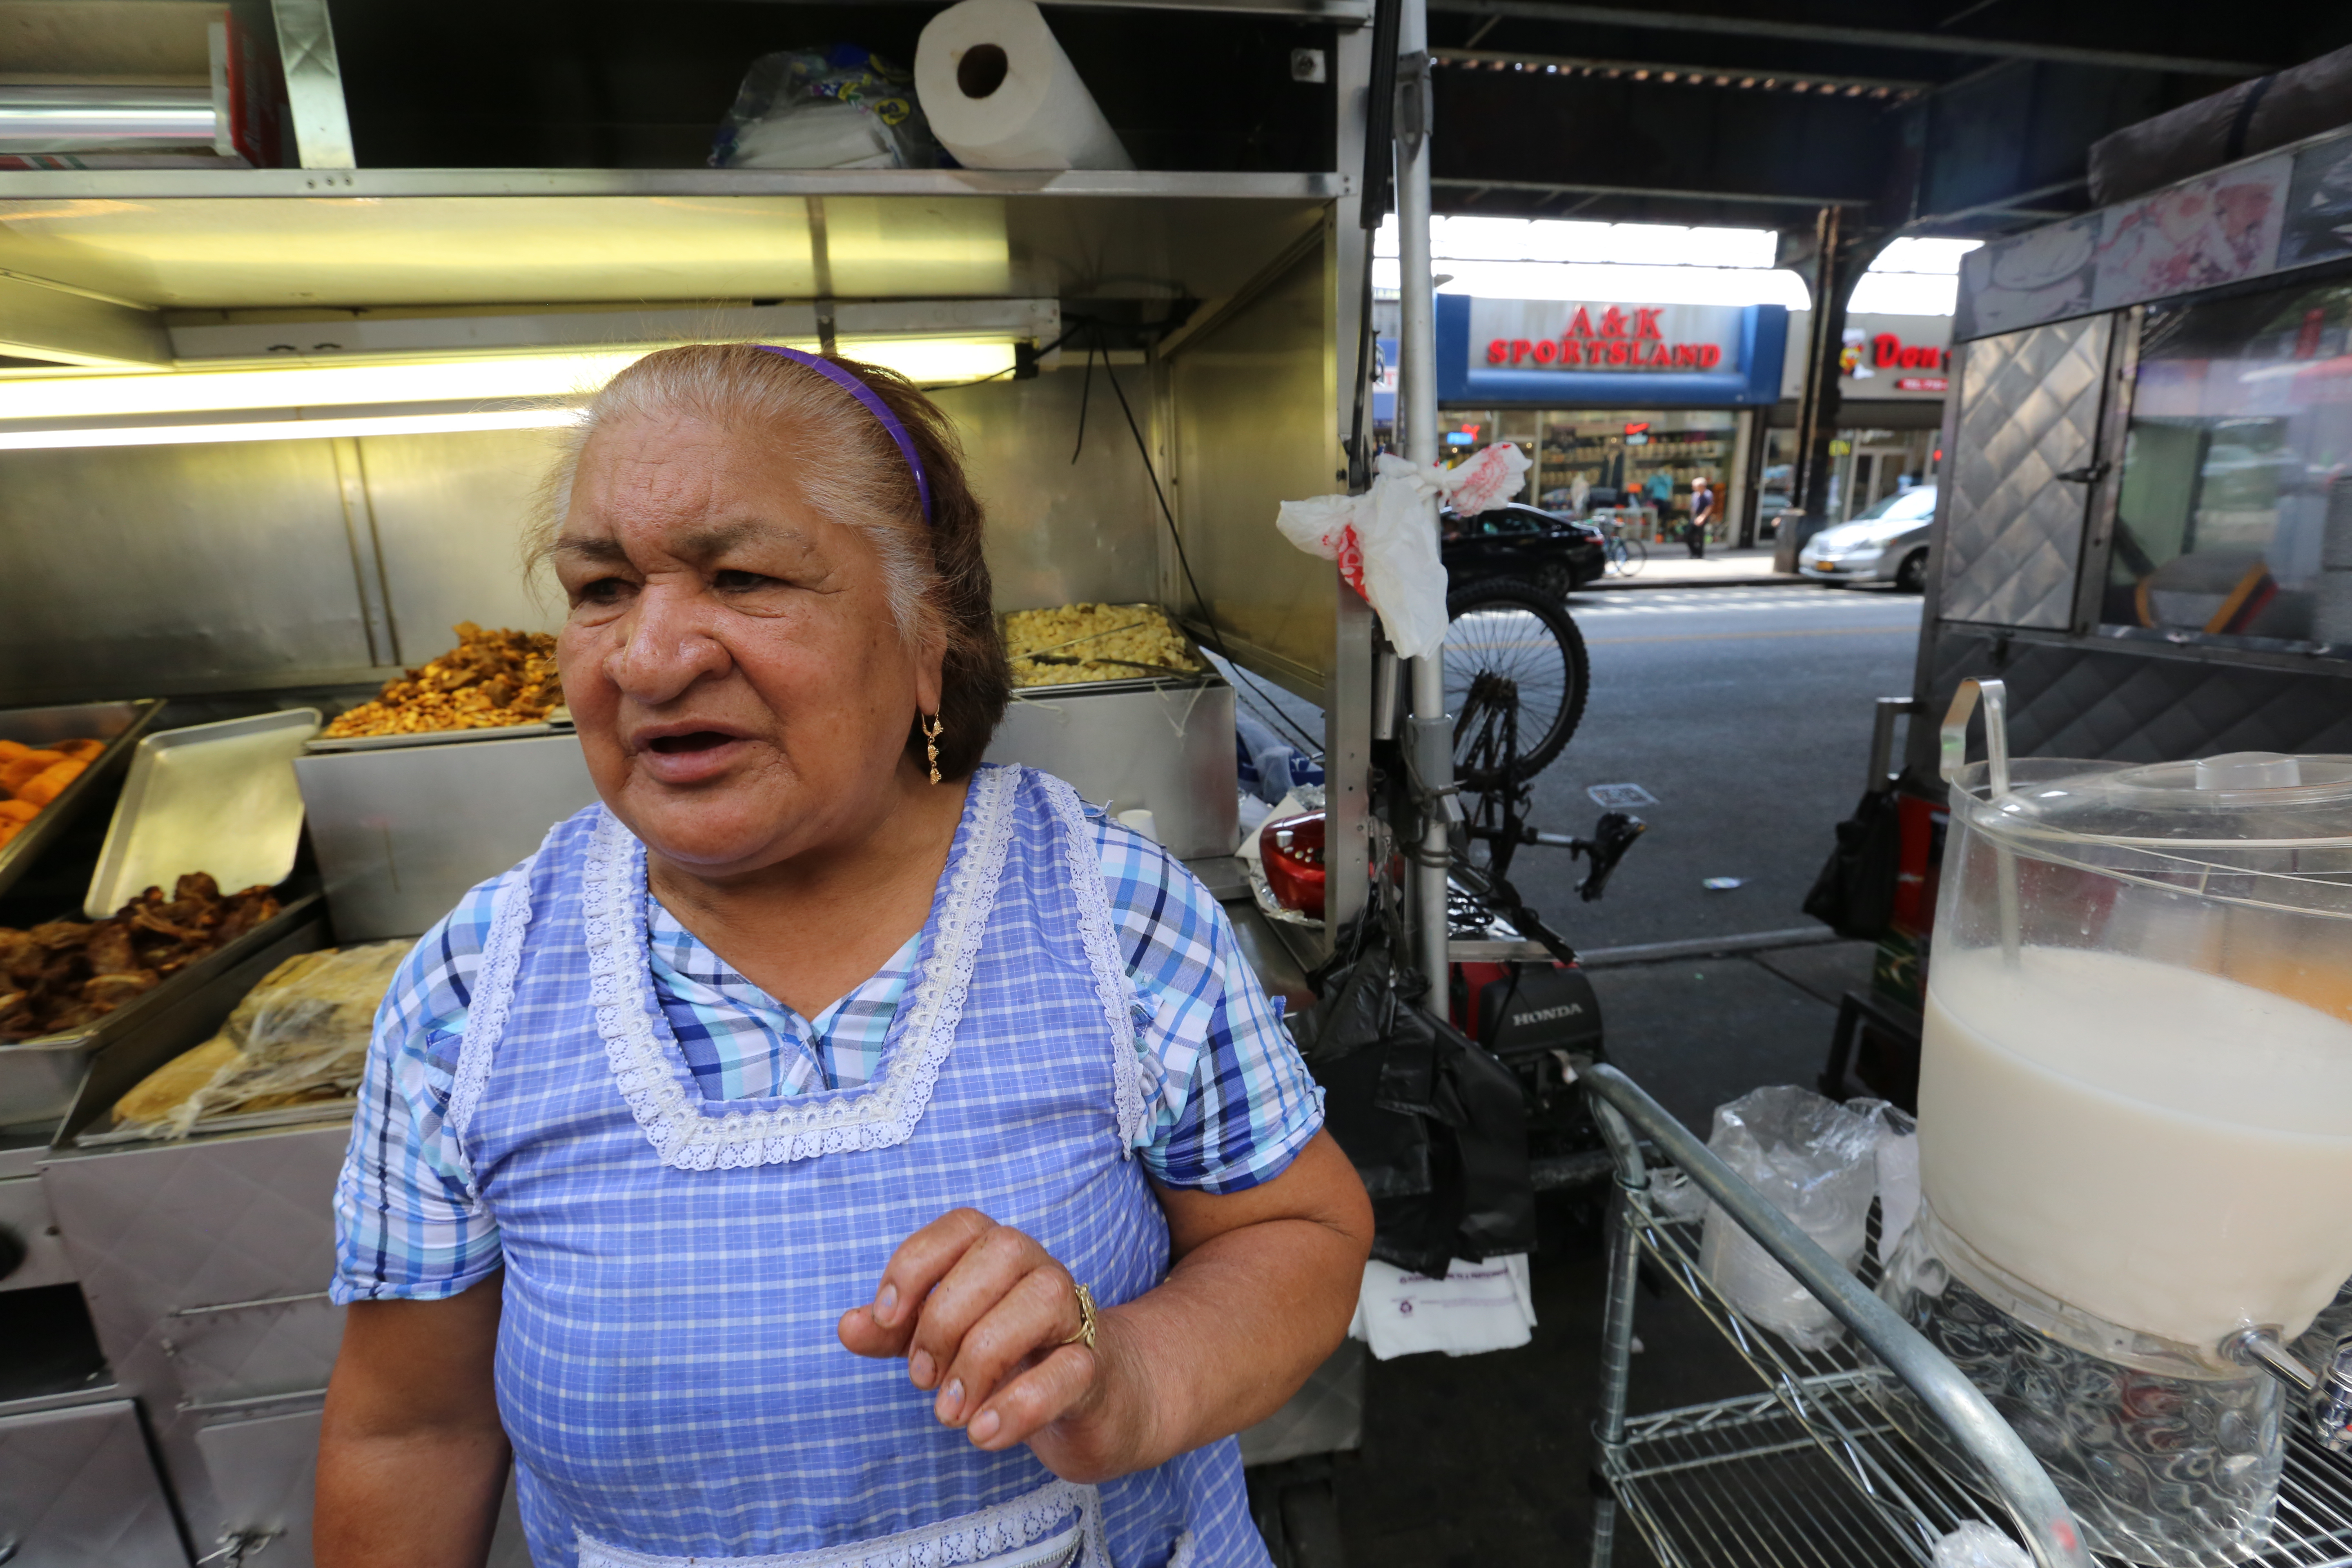 Maria Crespo en su puesto de comida tipica de Ecuador. Alcalde Bill de Blasio pasara la semana en el condado de Queens.